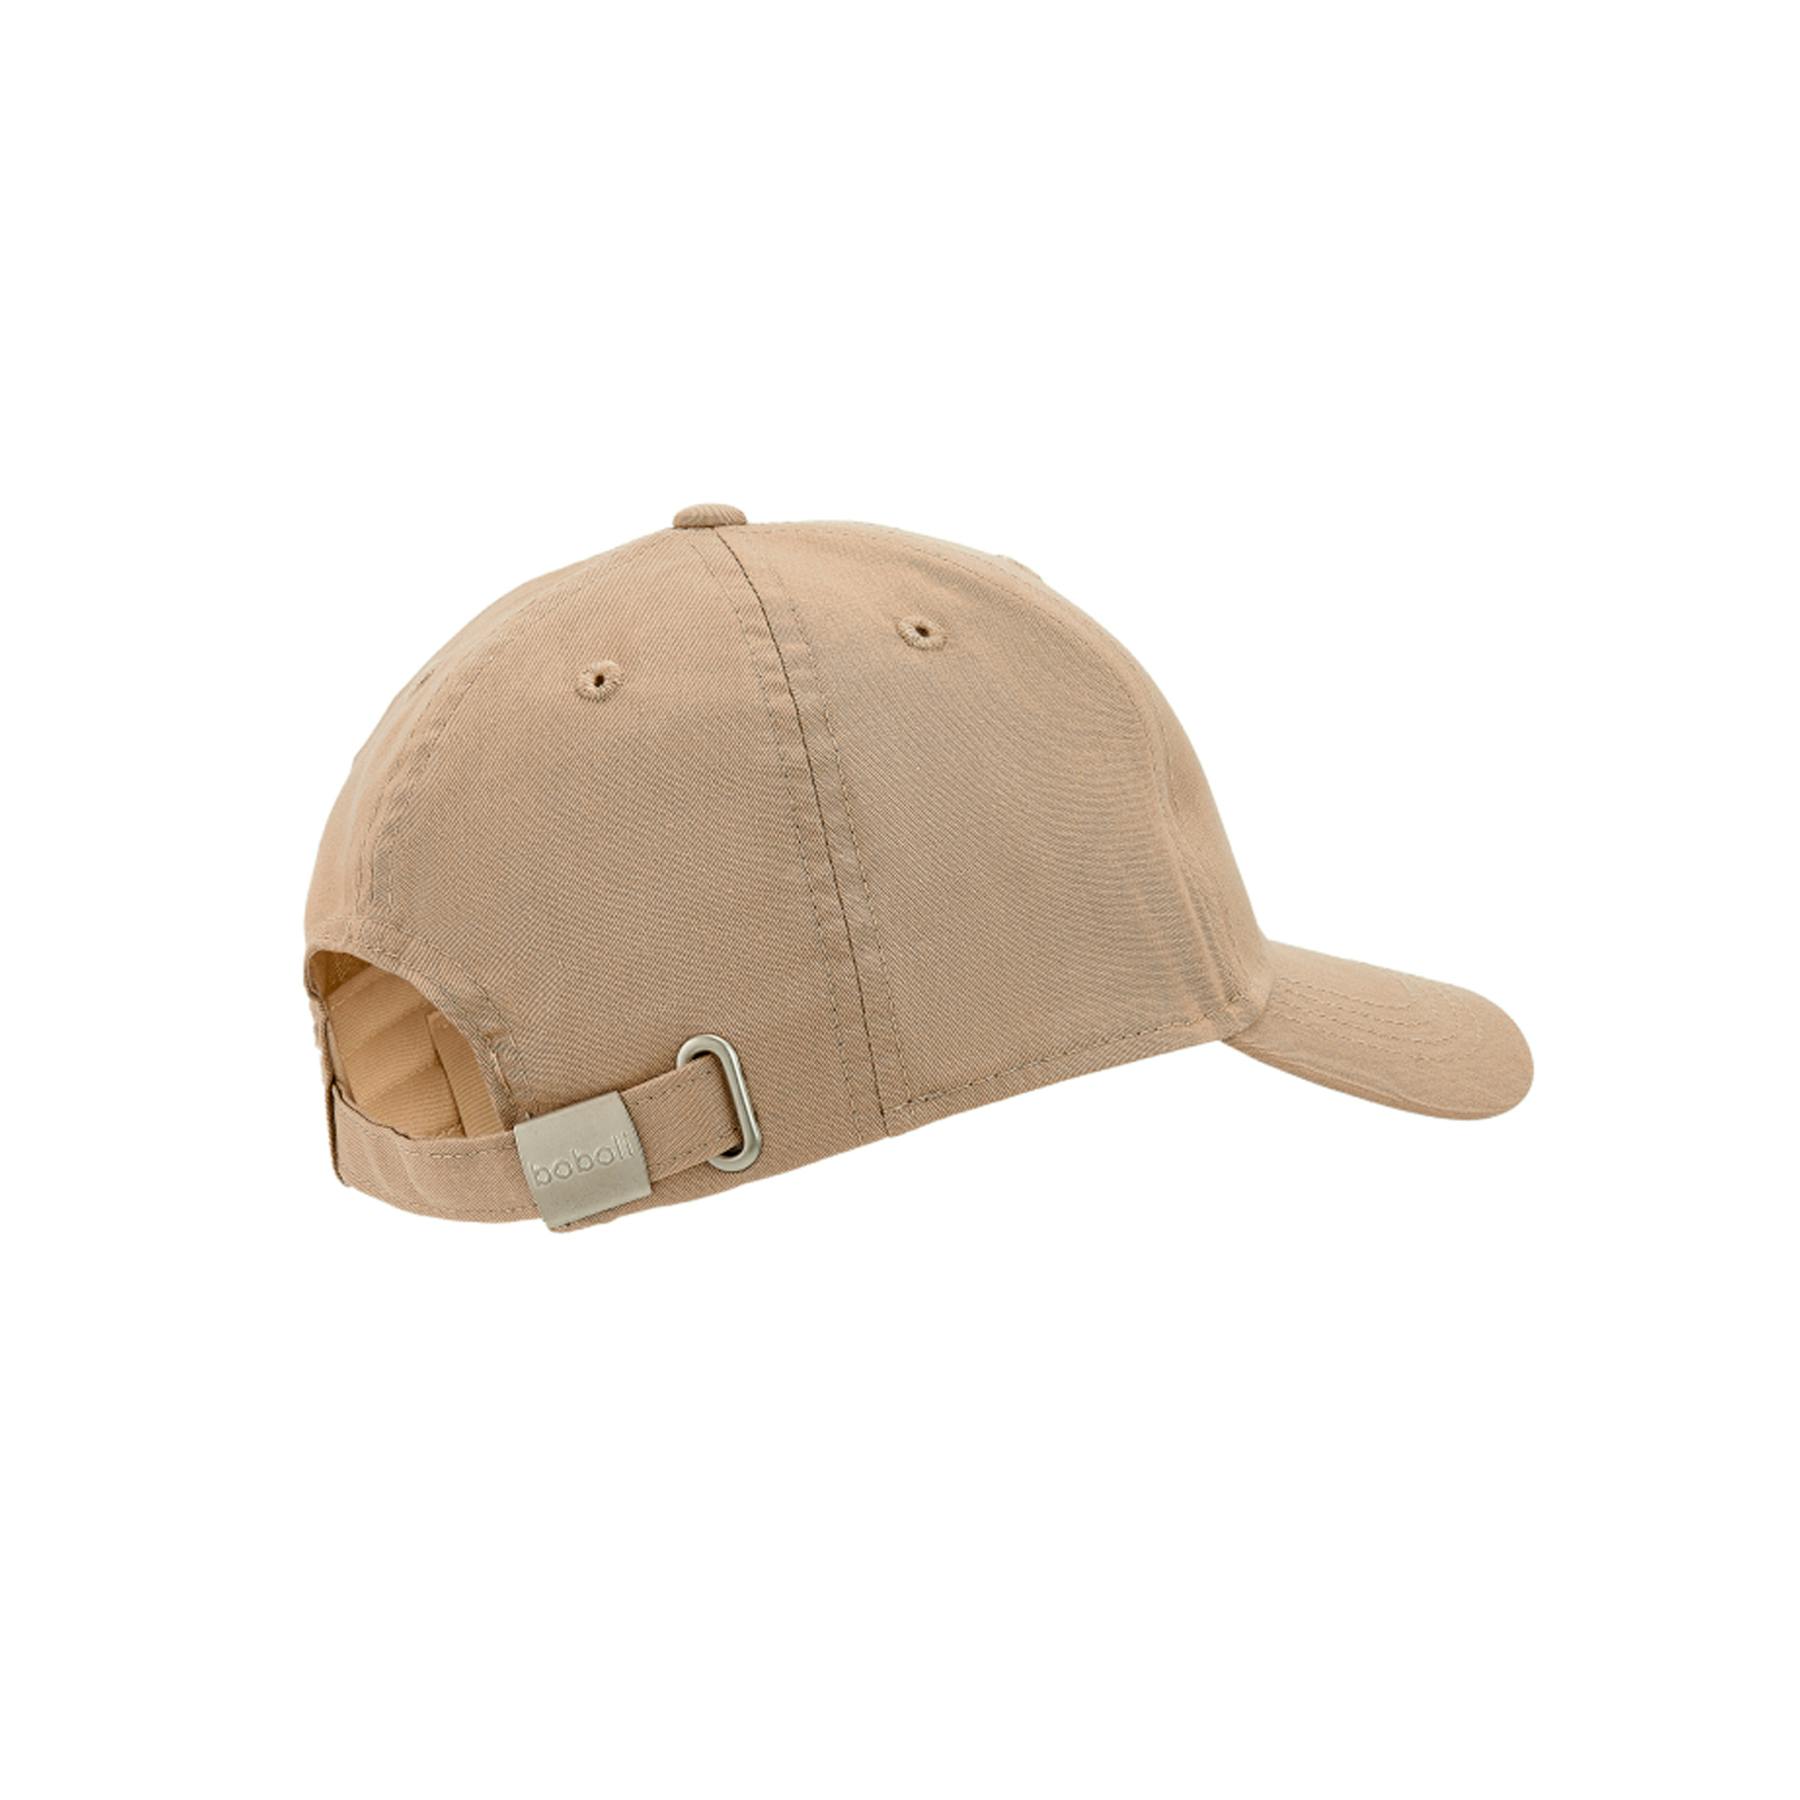 BOBOLI - Boboli Παιδικό Καπέλο Unisex